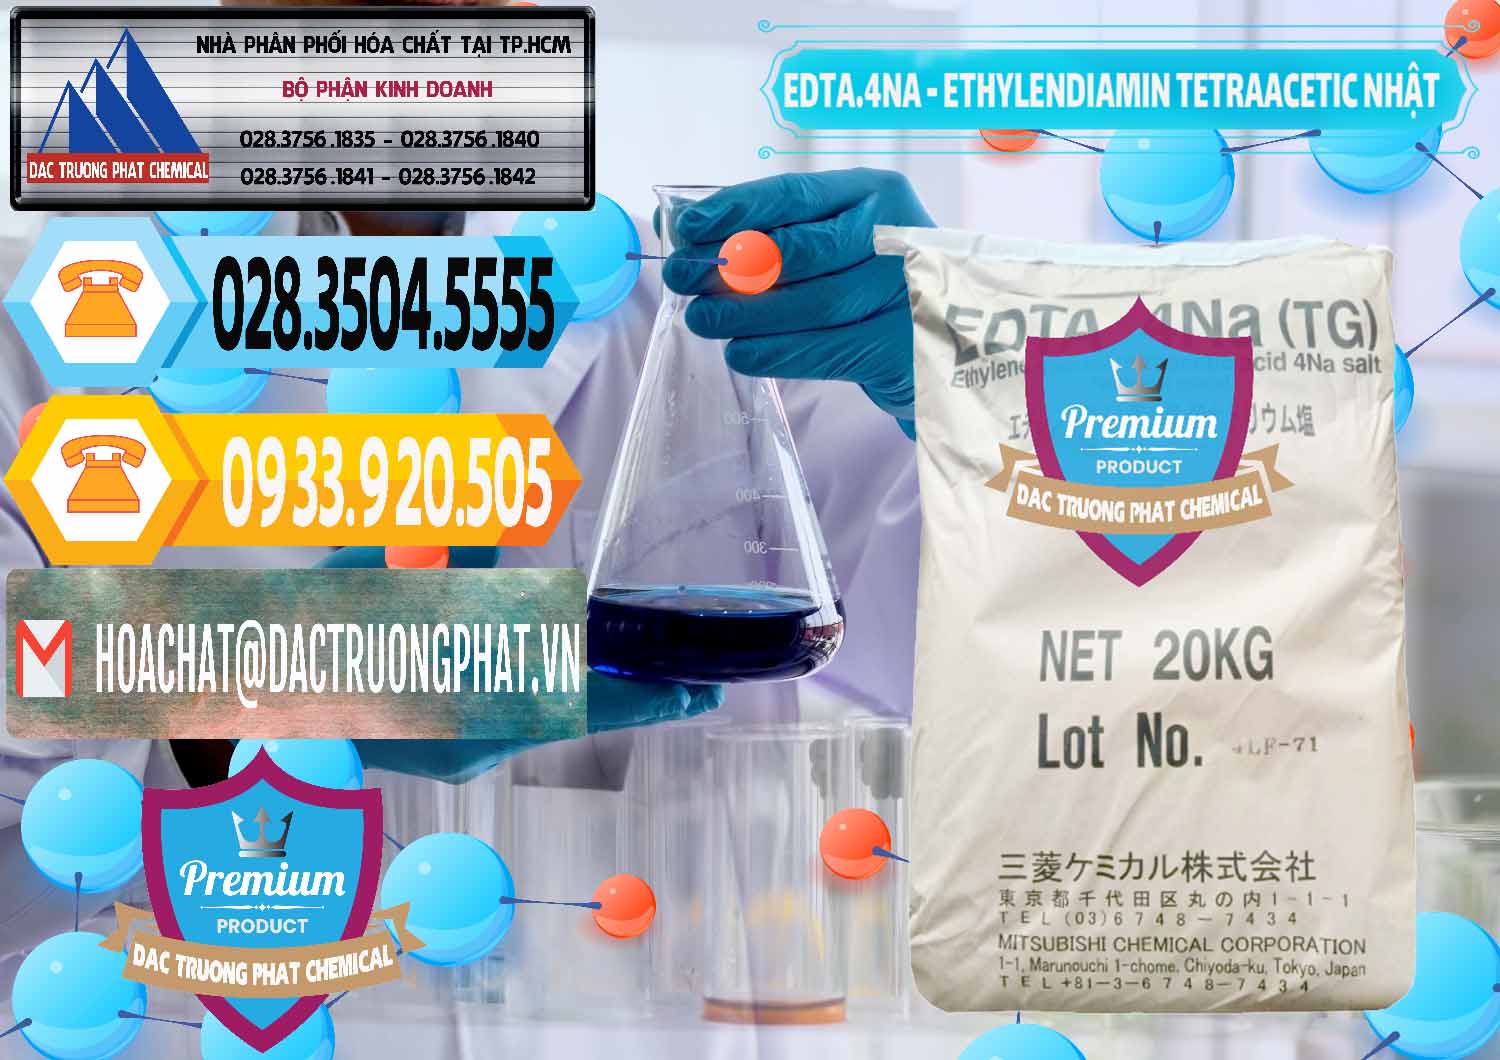 Bán _ cung cấp EDTA 4Na - Ethylendiamin Tetraacetic Nhật Bản Japan - 0482 - Nơi chuyên cung cấp - kinh doanh hóa chất tại TP.HCM - hoachattayrua.net